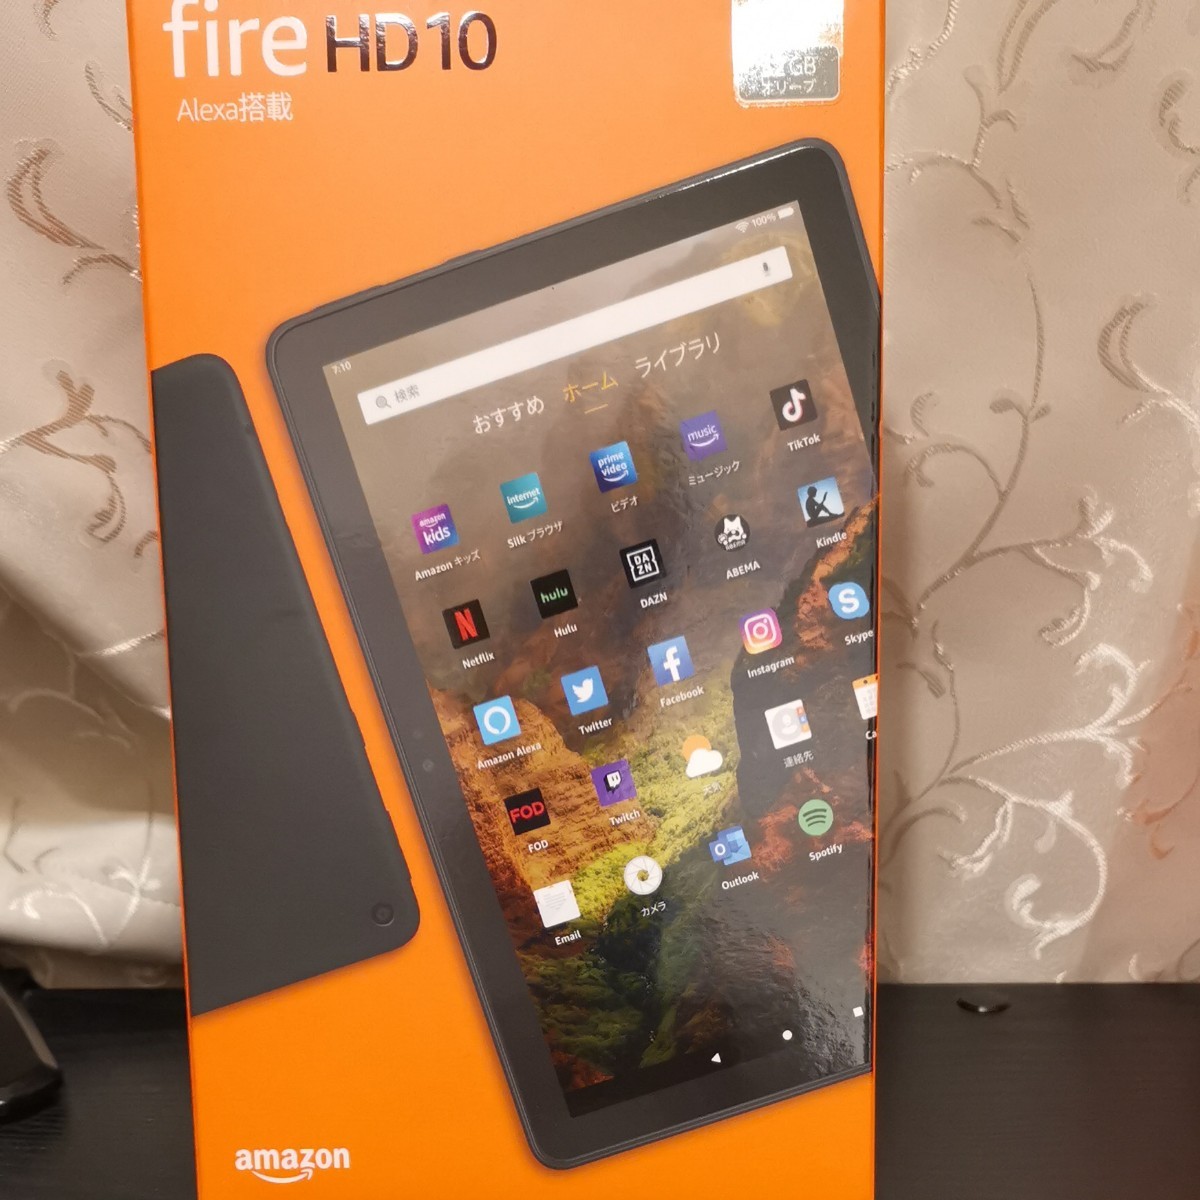 Amazon Fire HD 10